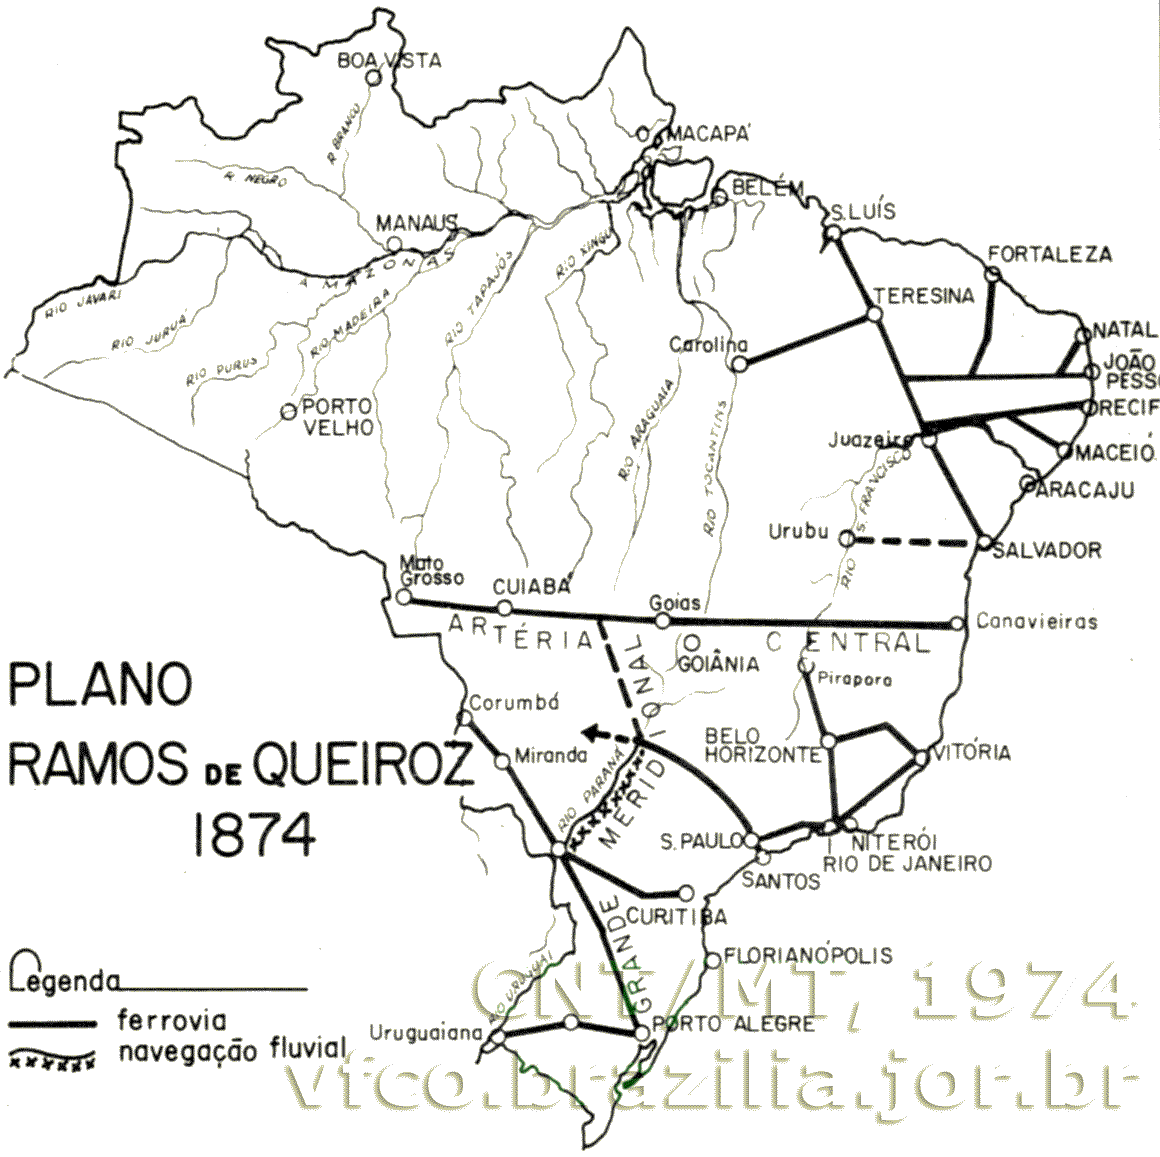 Ferrovias do primeiro plano proposto por Ramos de Queiroz